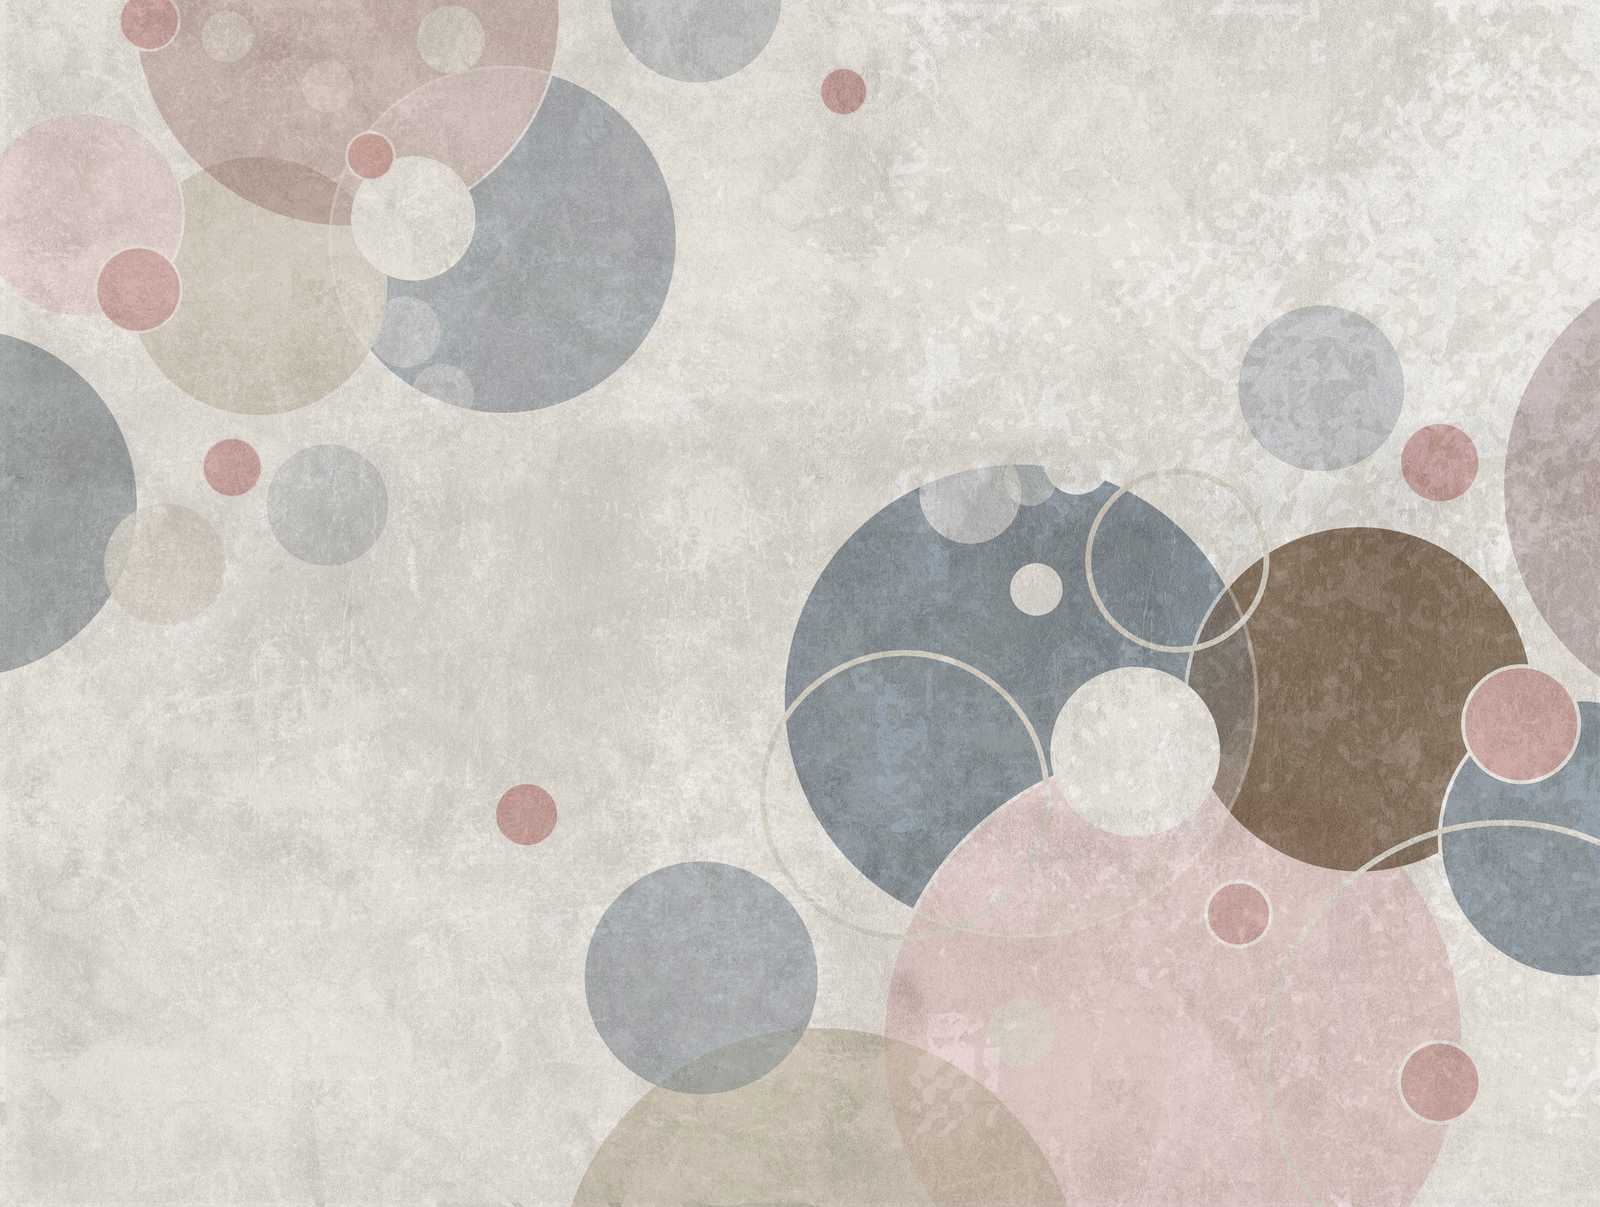             Tapeten-Neuheit – Motivtapete Kreis Muster abstrakt im Modernen Design
        